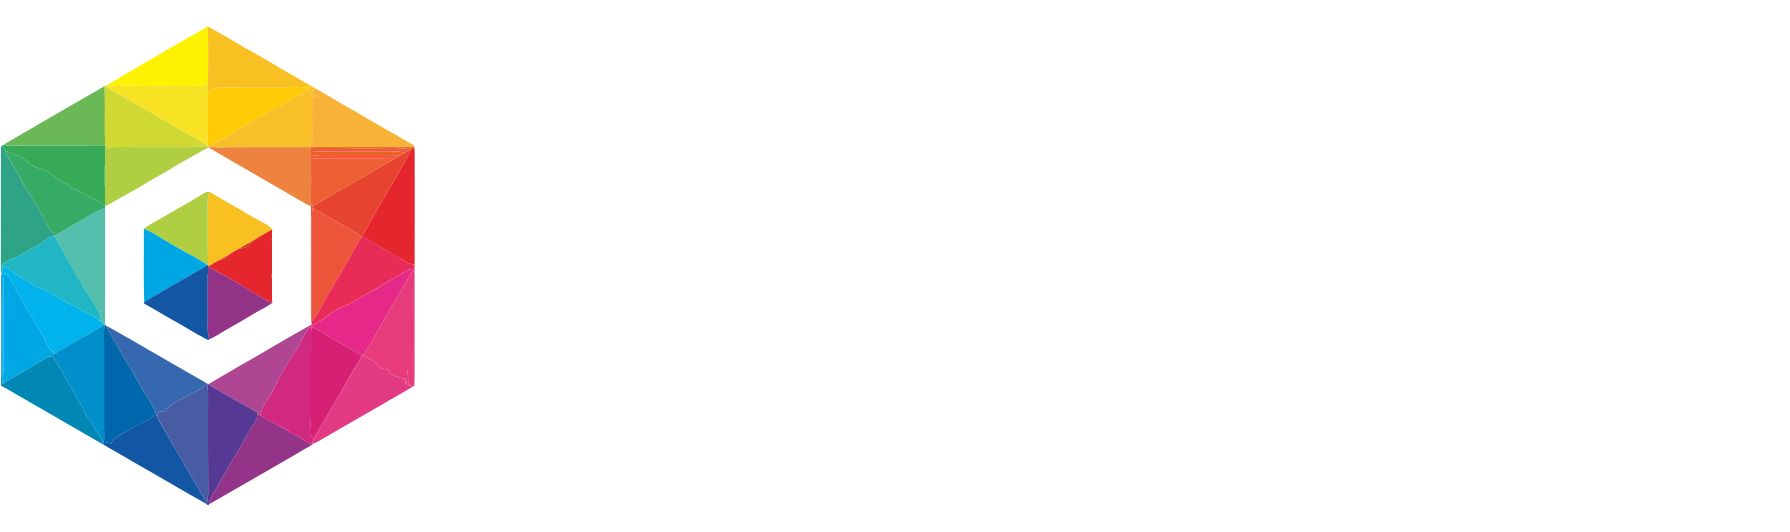 Recursion Pharmaceuticals Logo groß für dunkle Hintergründe (transparentes PNG)